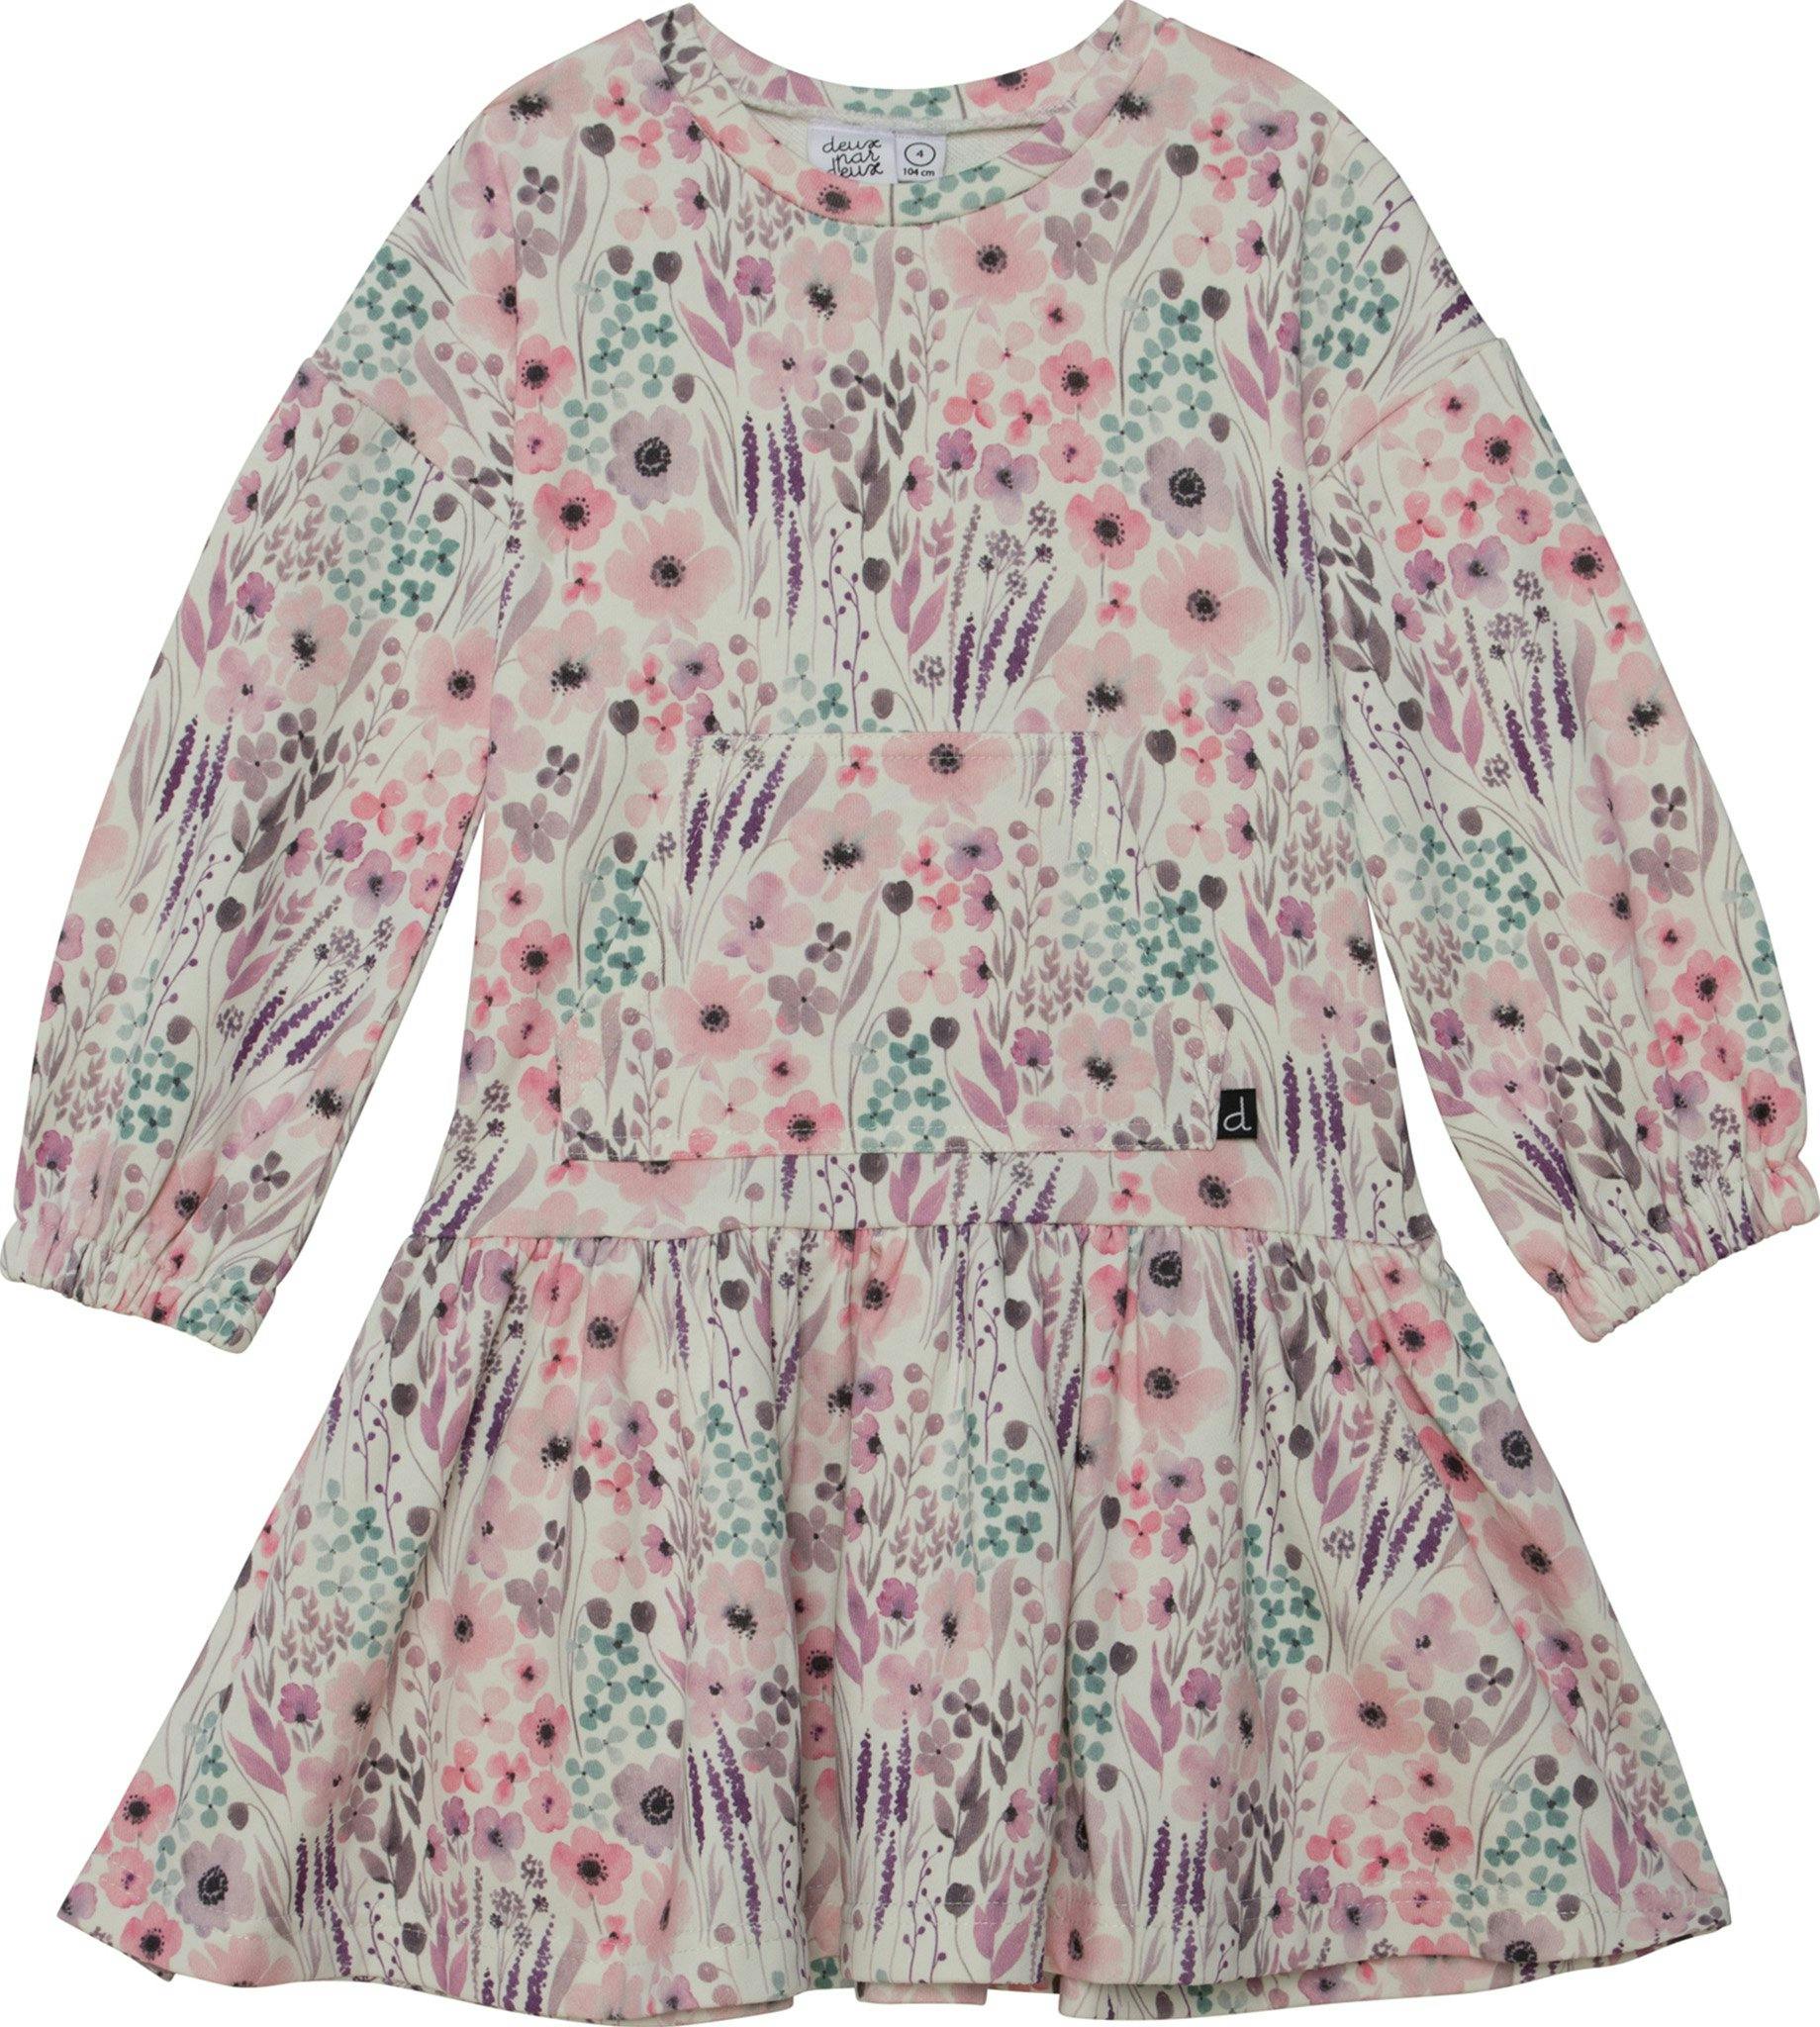 Image de produit pour Robe en molleton à manches longues imprimée motif de fleurs en aquarelle - Petite Fille